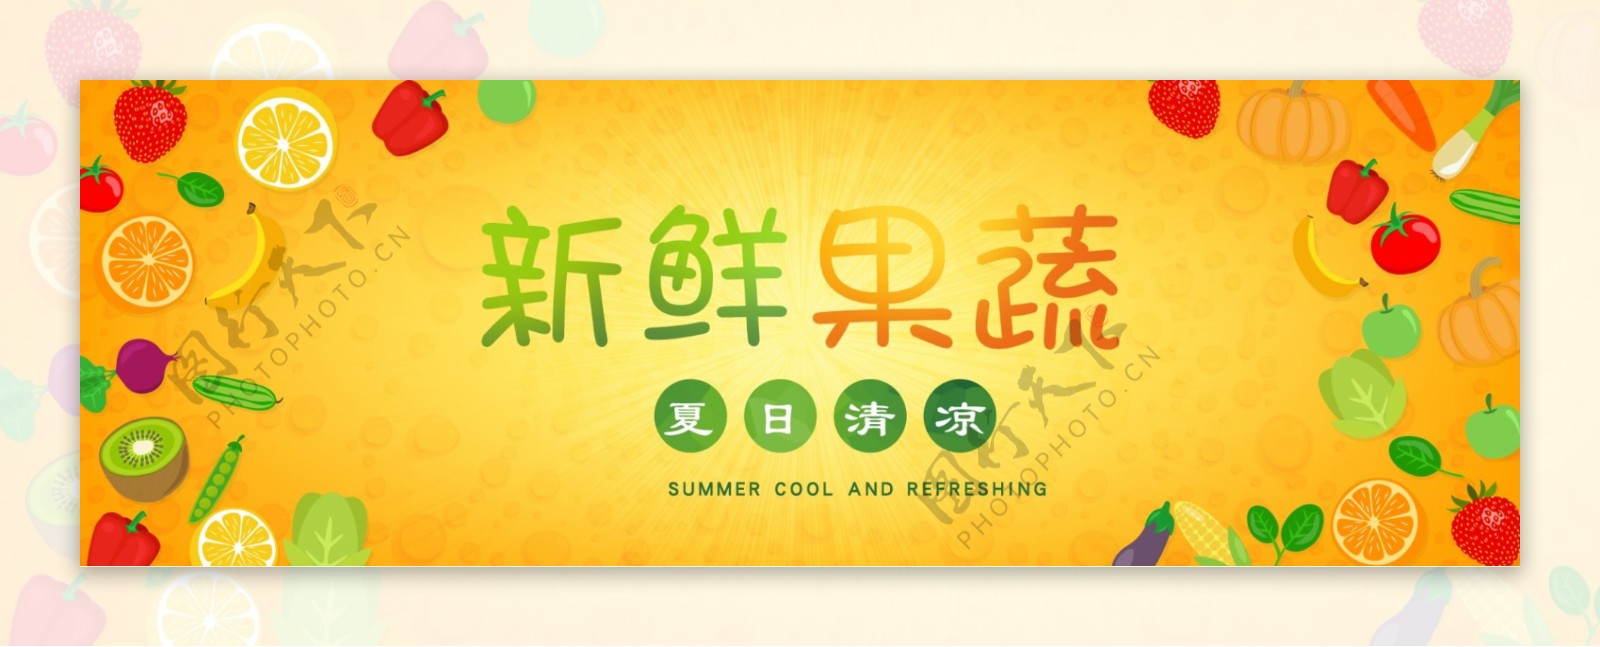 电商淘宝天猫夏季美食节新鲜水果海报模板